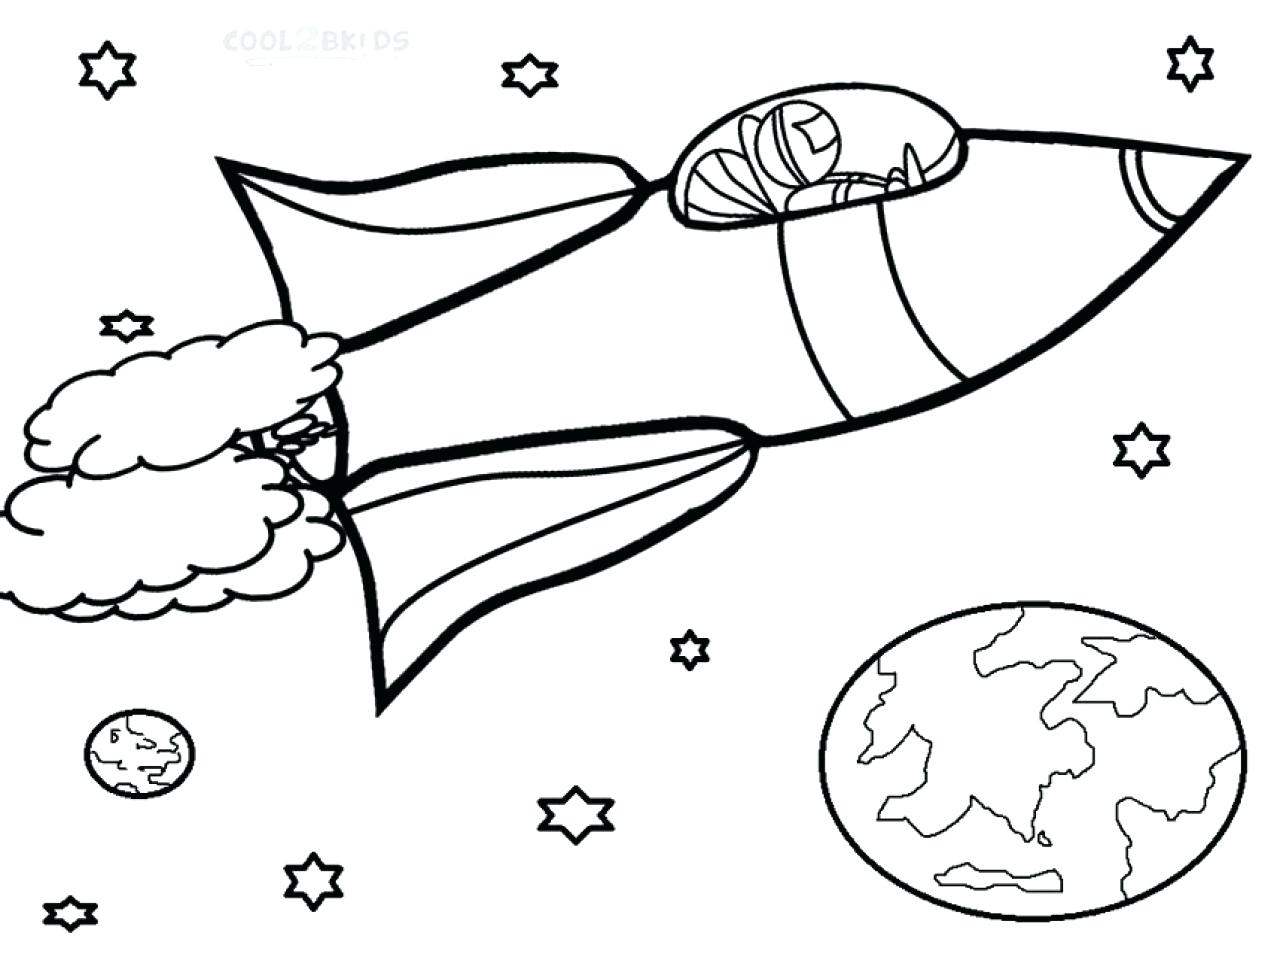 Раскраски к дню космонавтики для детей распечатать. Космос раскраска для детей. Ракета раскраска. Раскраска Космо для детей. Космические раскраски для детей.